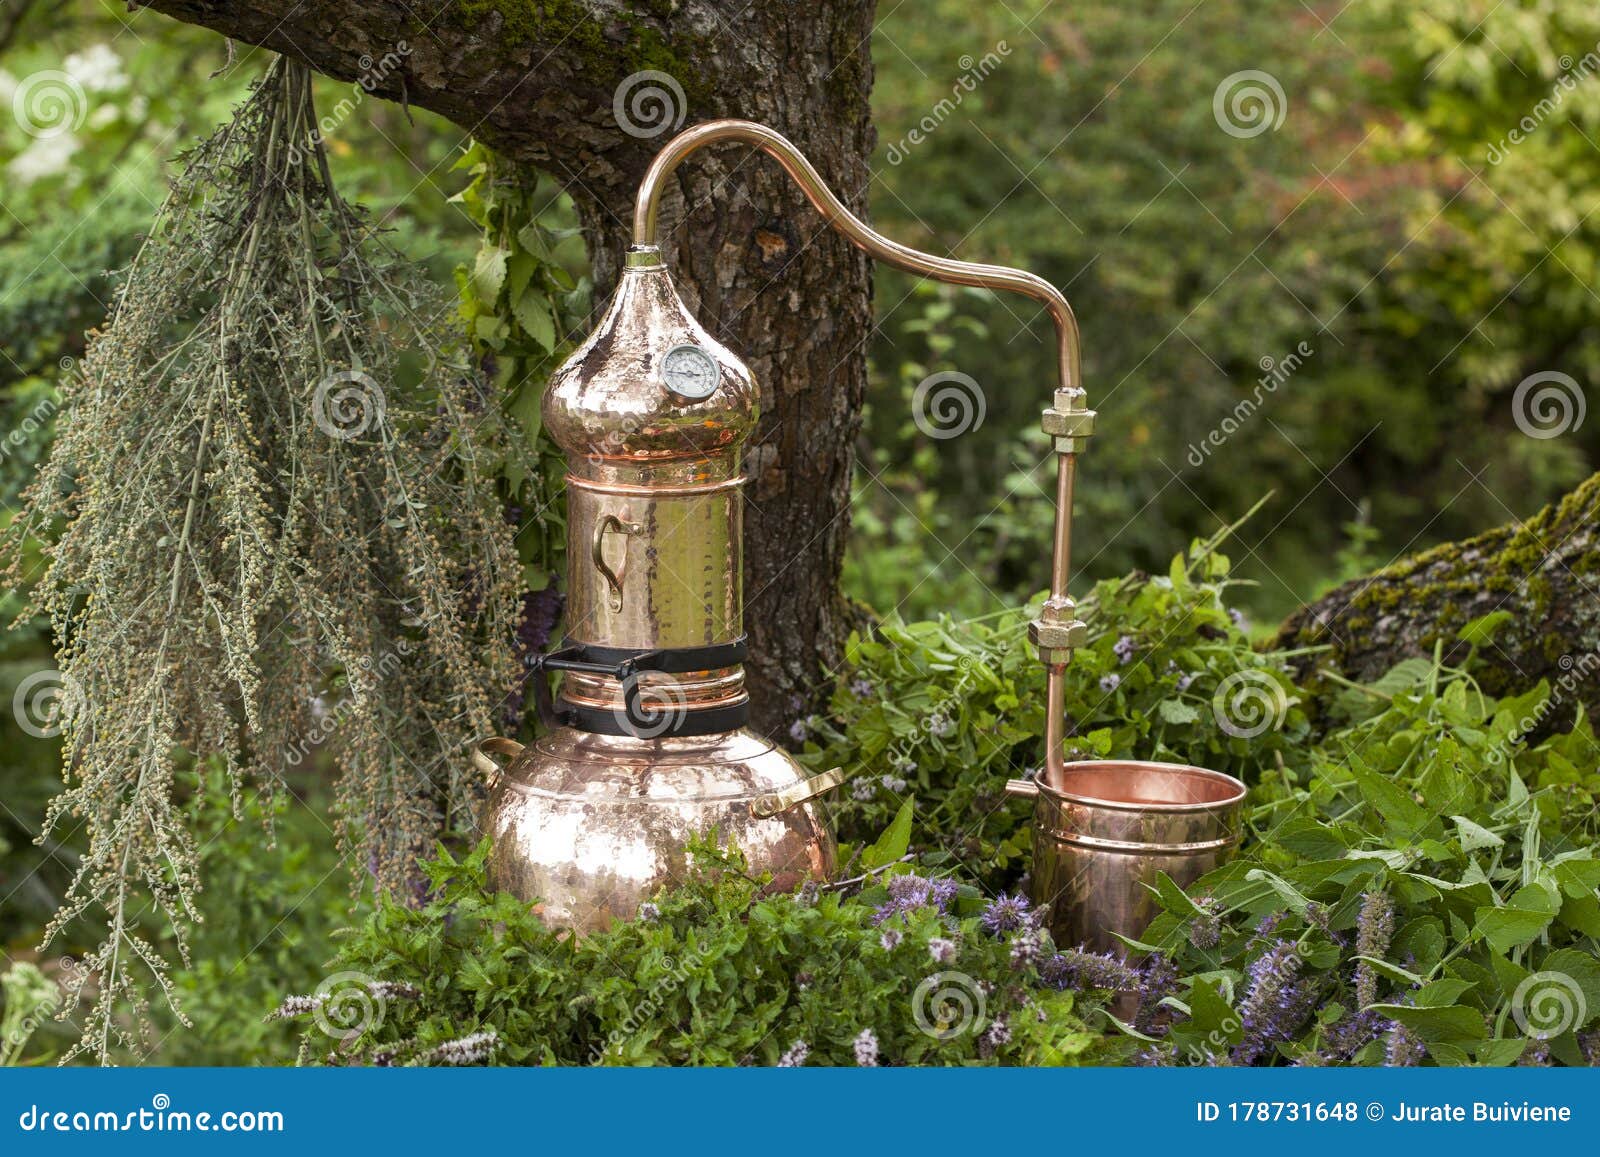 alembic is a distilling apparatus